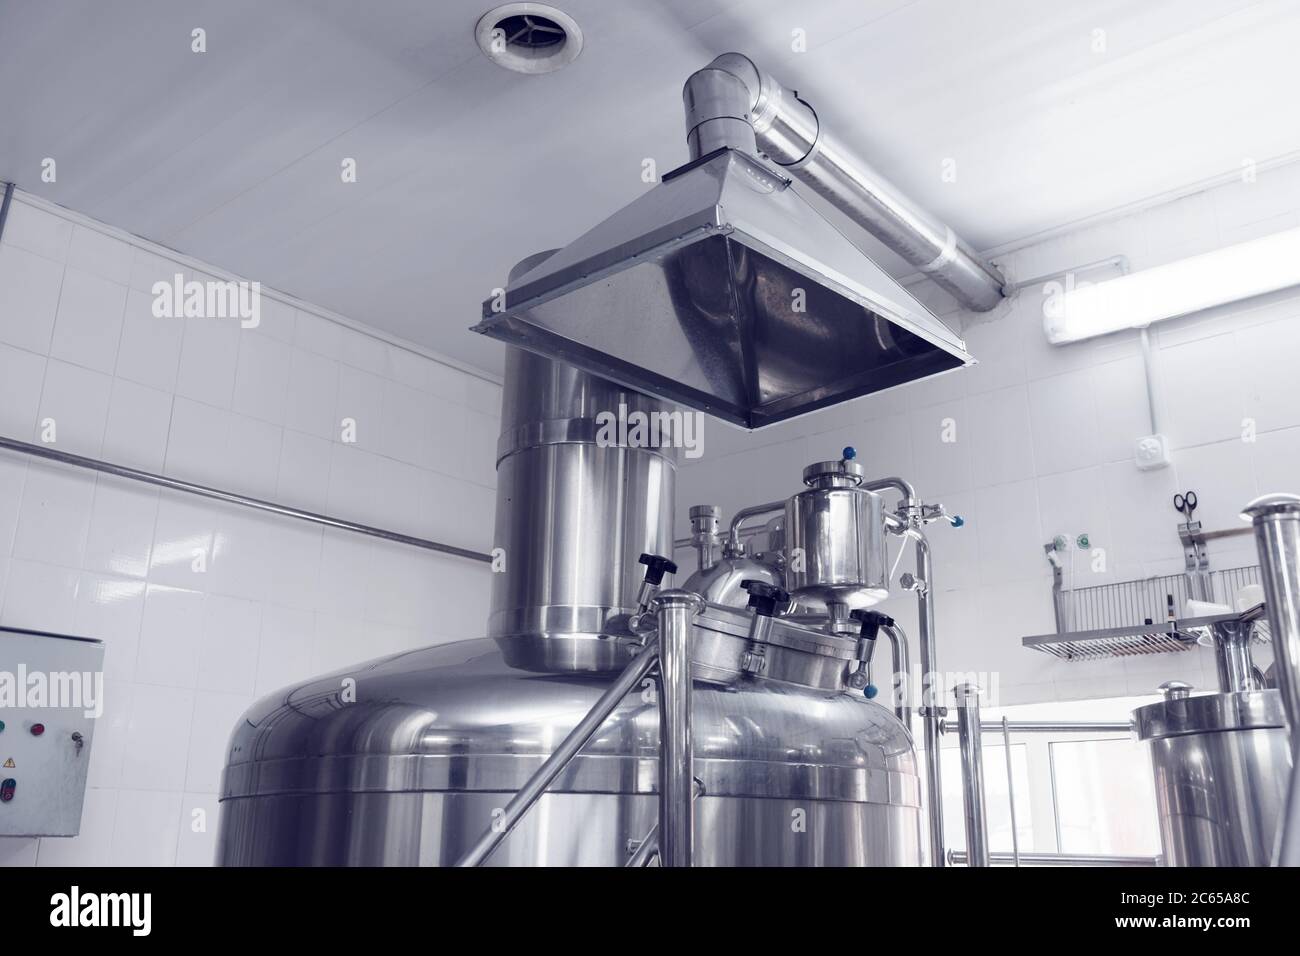 Belüftungssystem in einer Brauerei - Absaughaube über Bierbrautanks, getönt Stockfoto